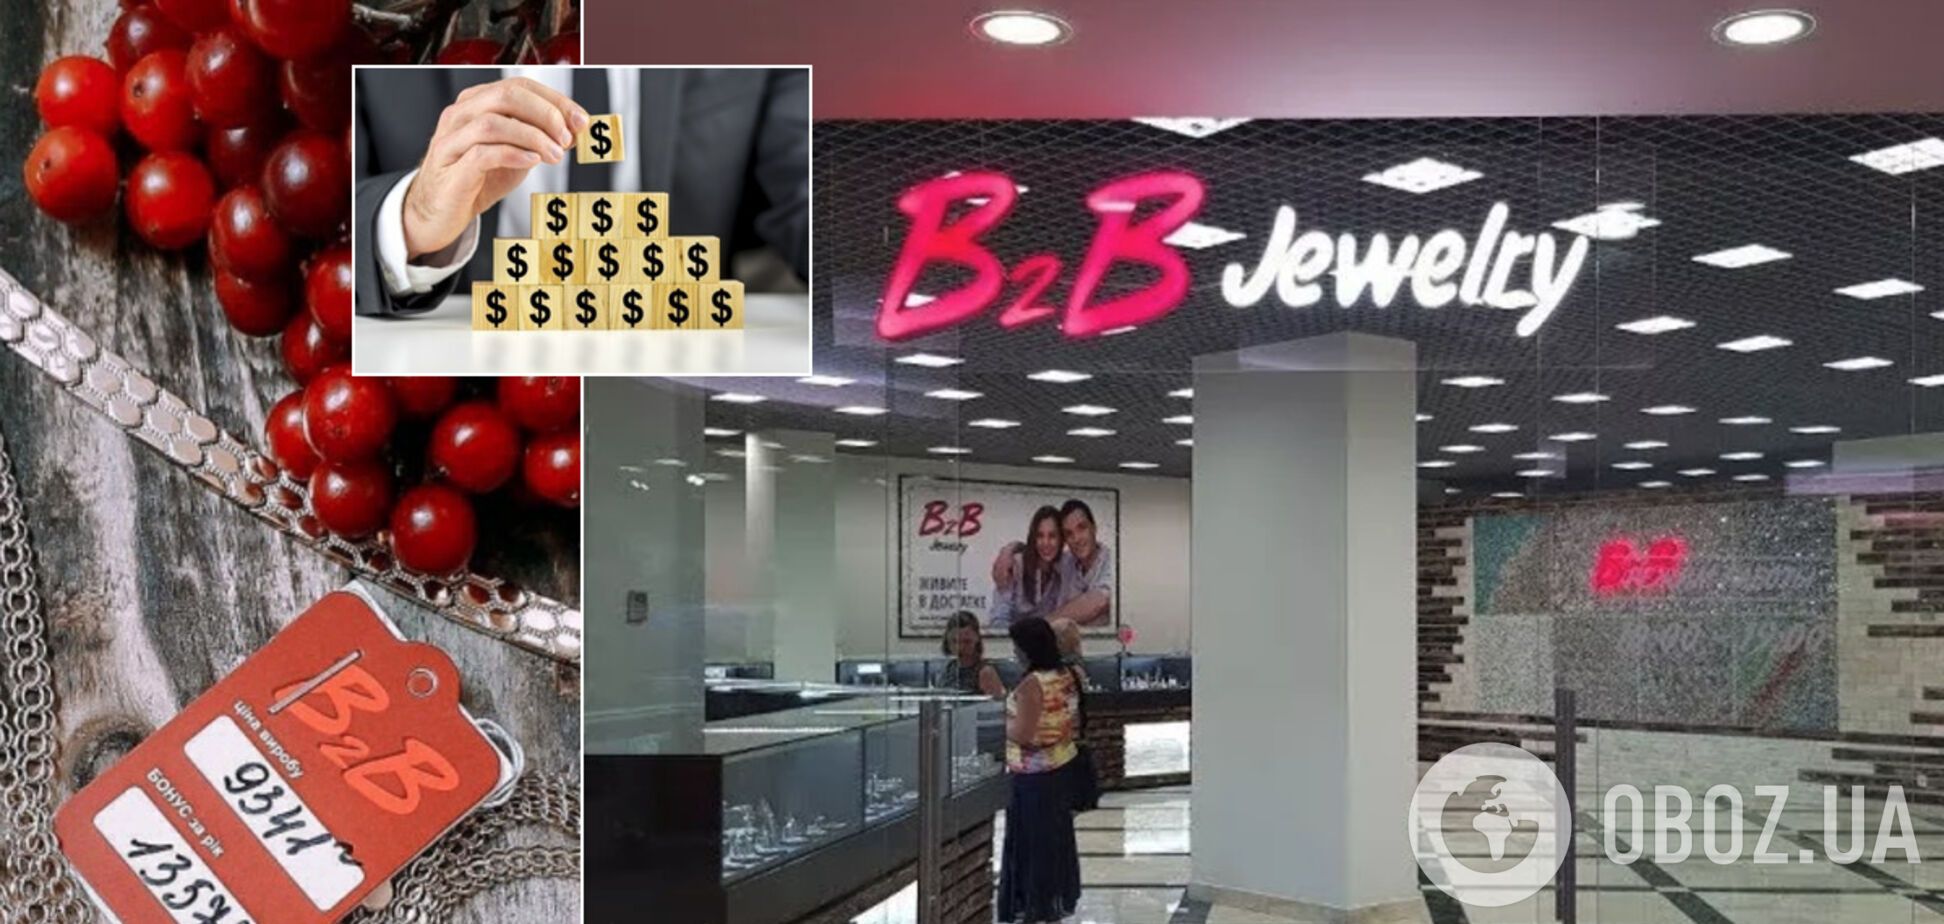 Компанію B2BJewelry звинуватили в шахрайстві: під загрозою тисячі вкладників